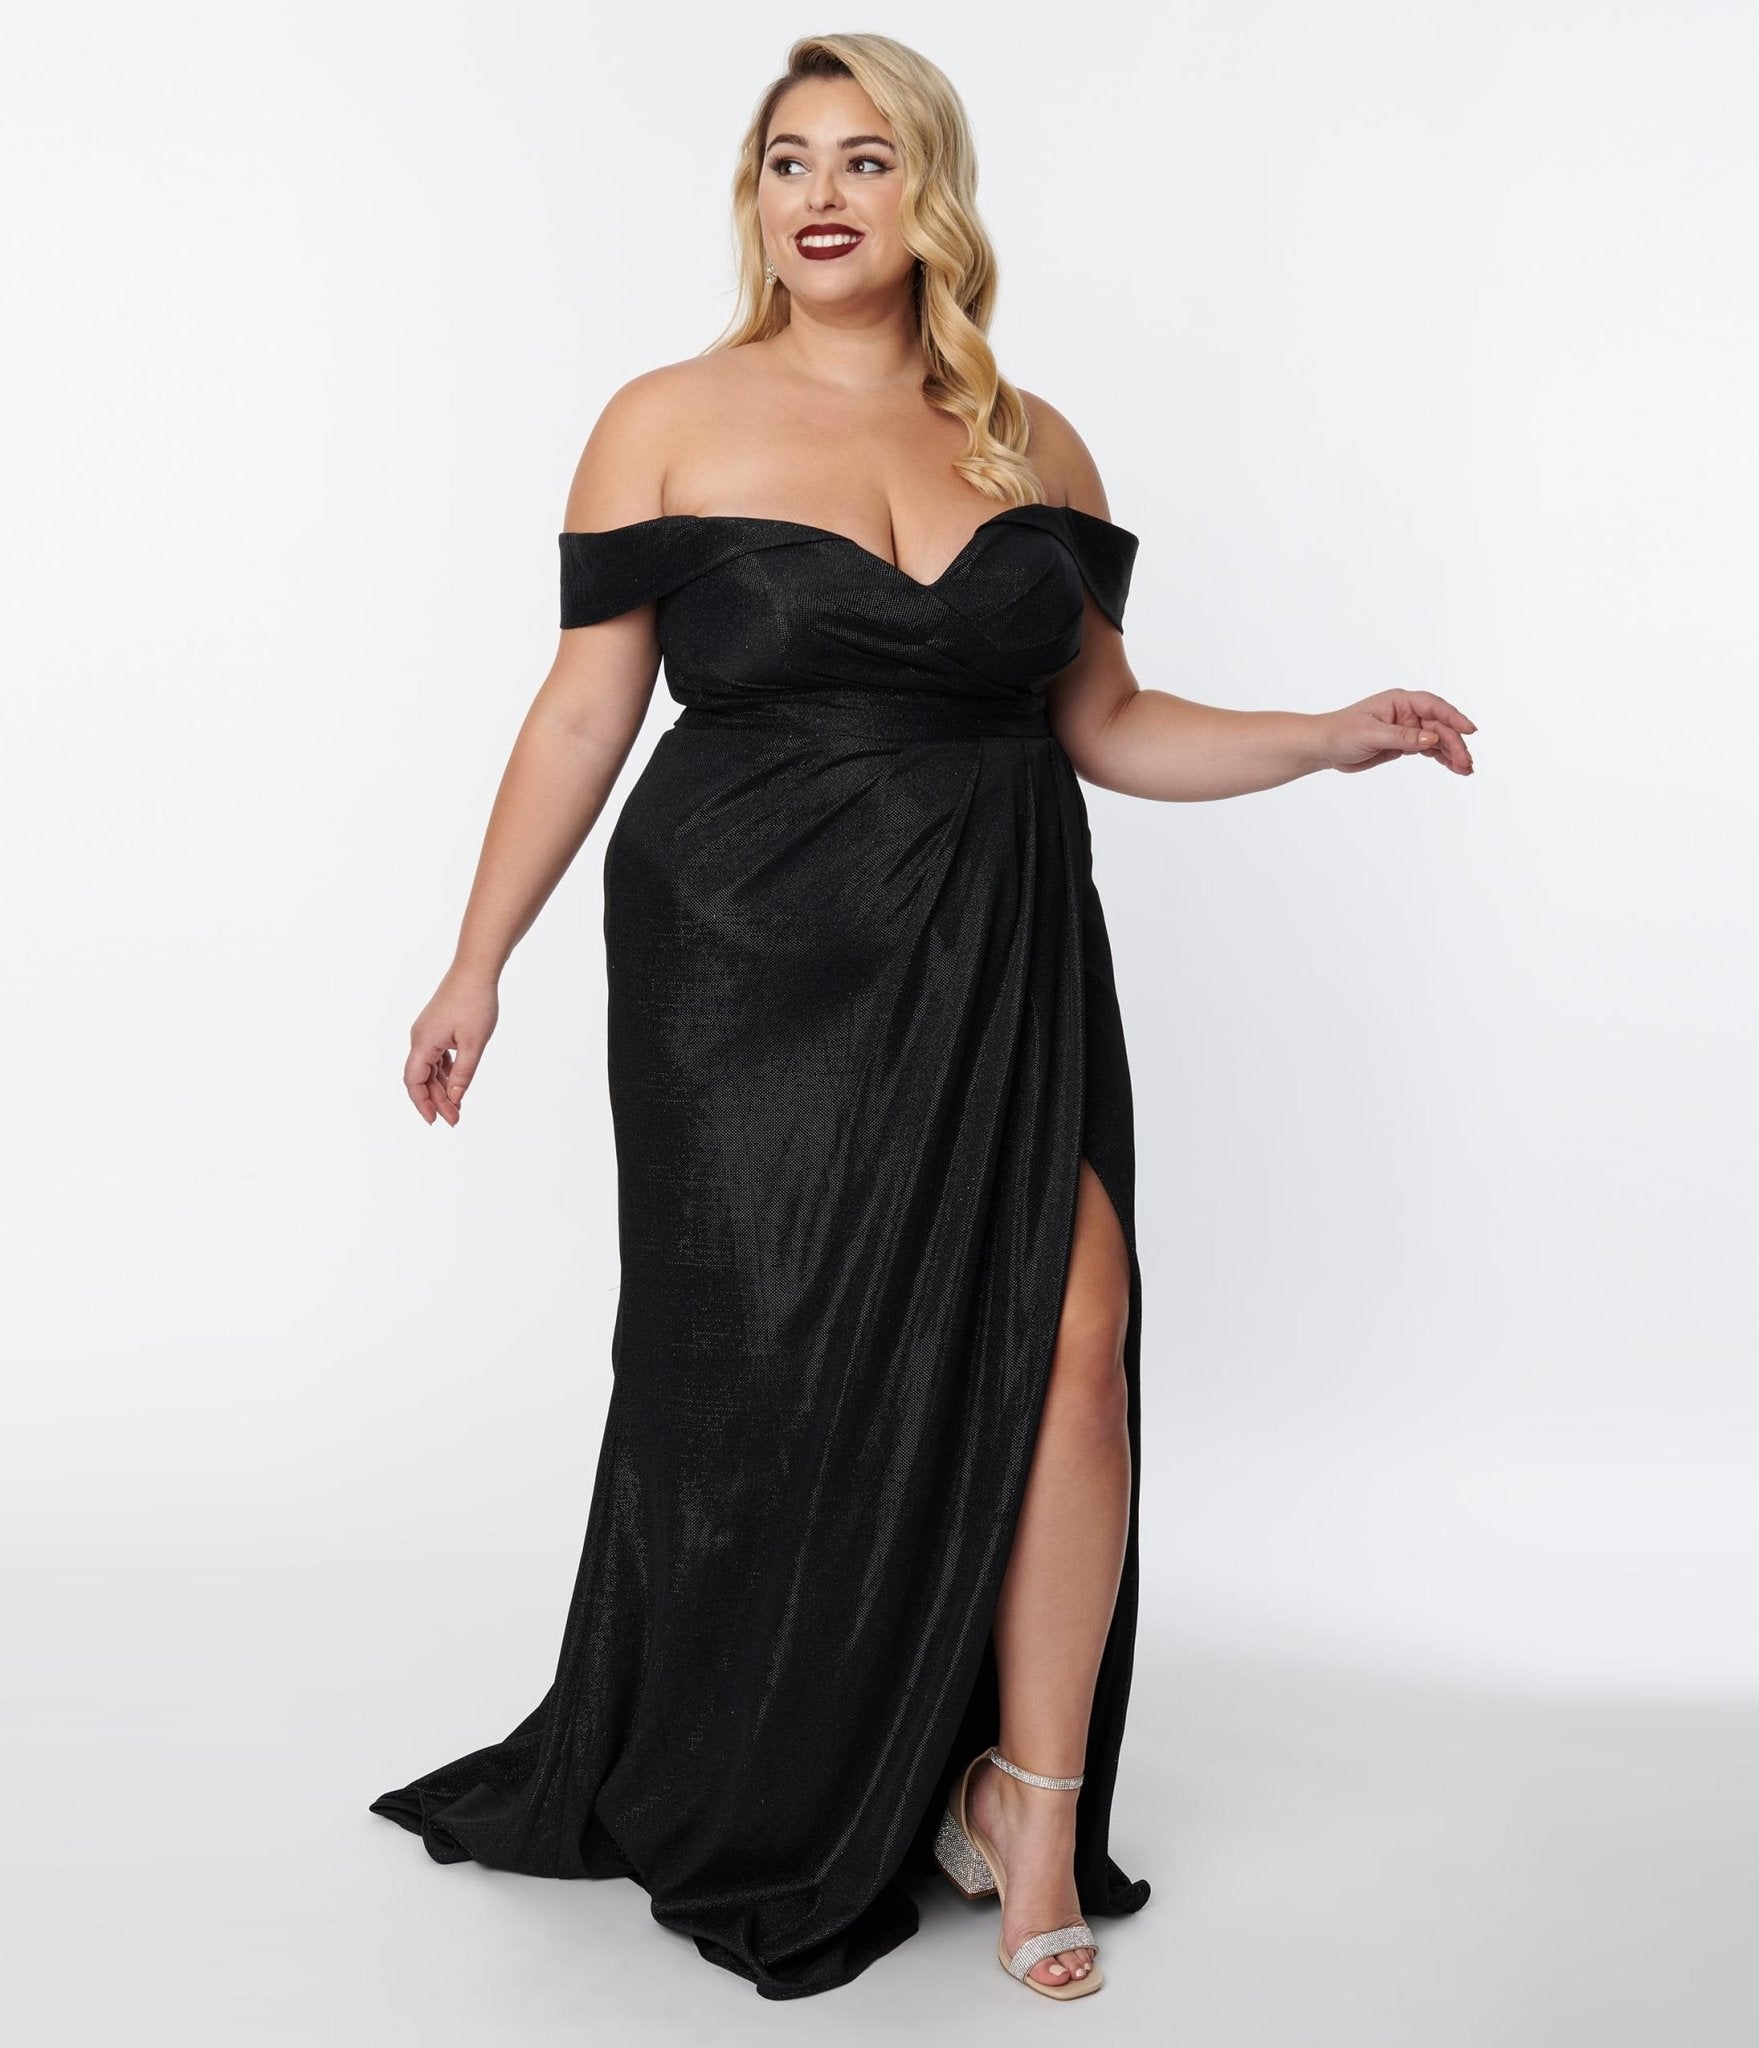 Plus Size Elegant Black Shimmer Off The Shoulder Dress – Unique